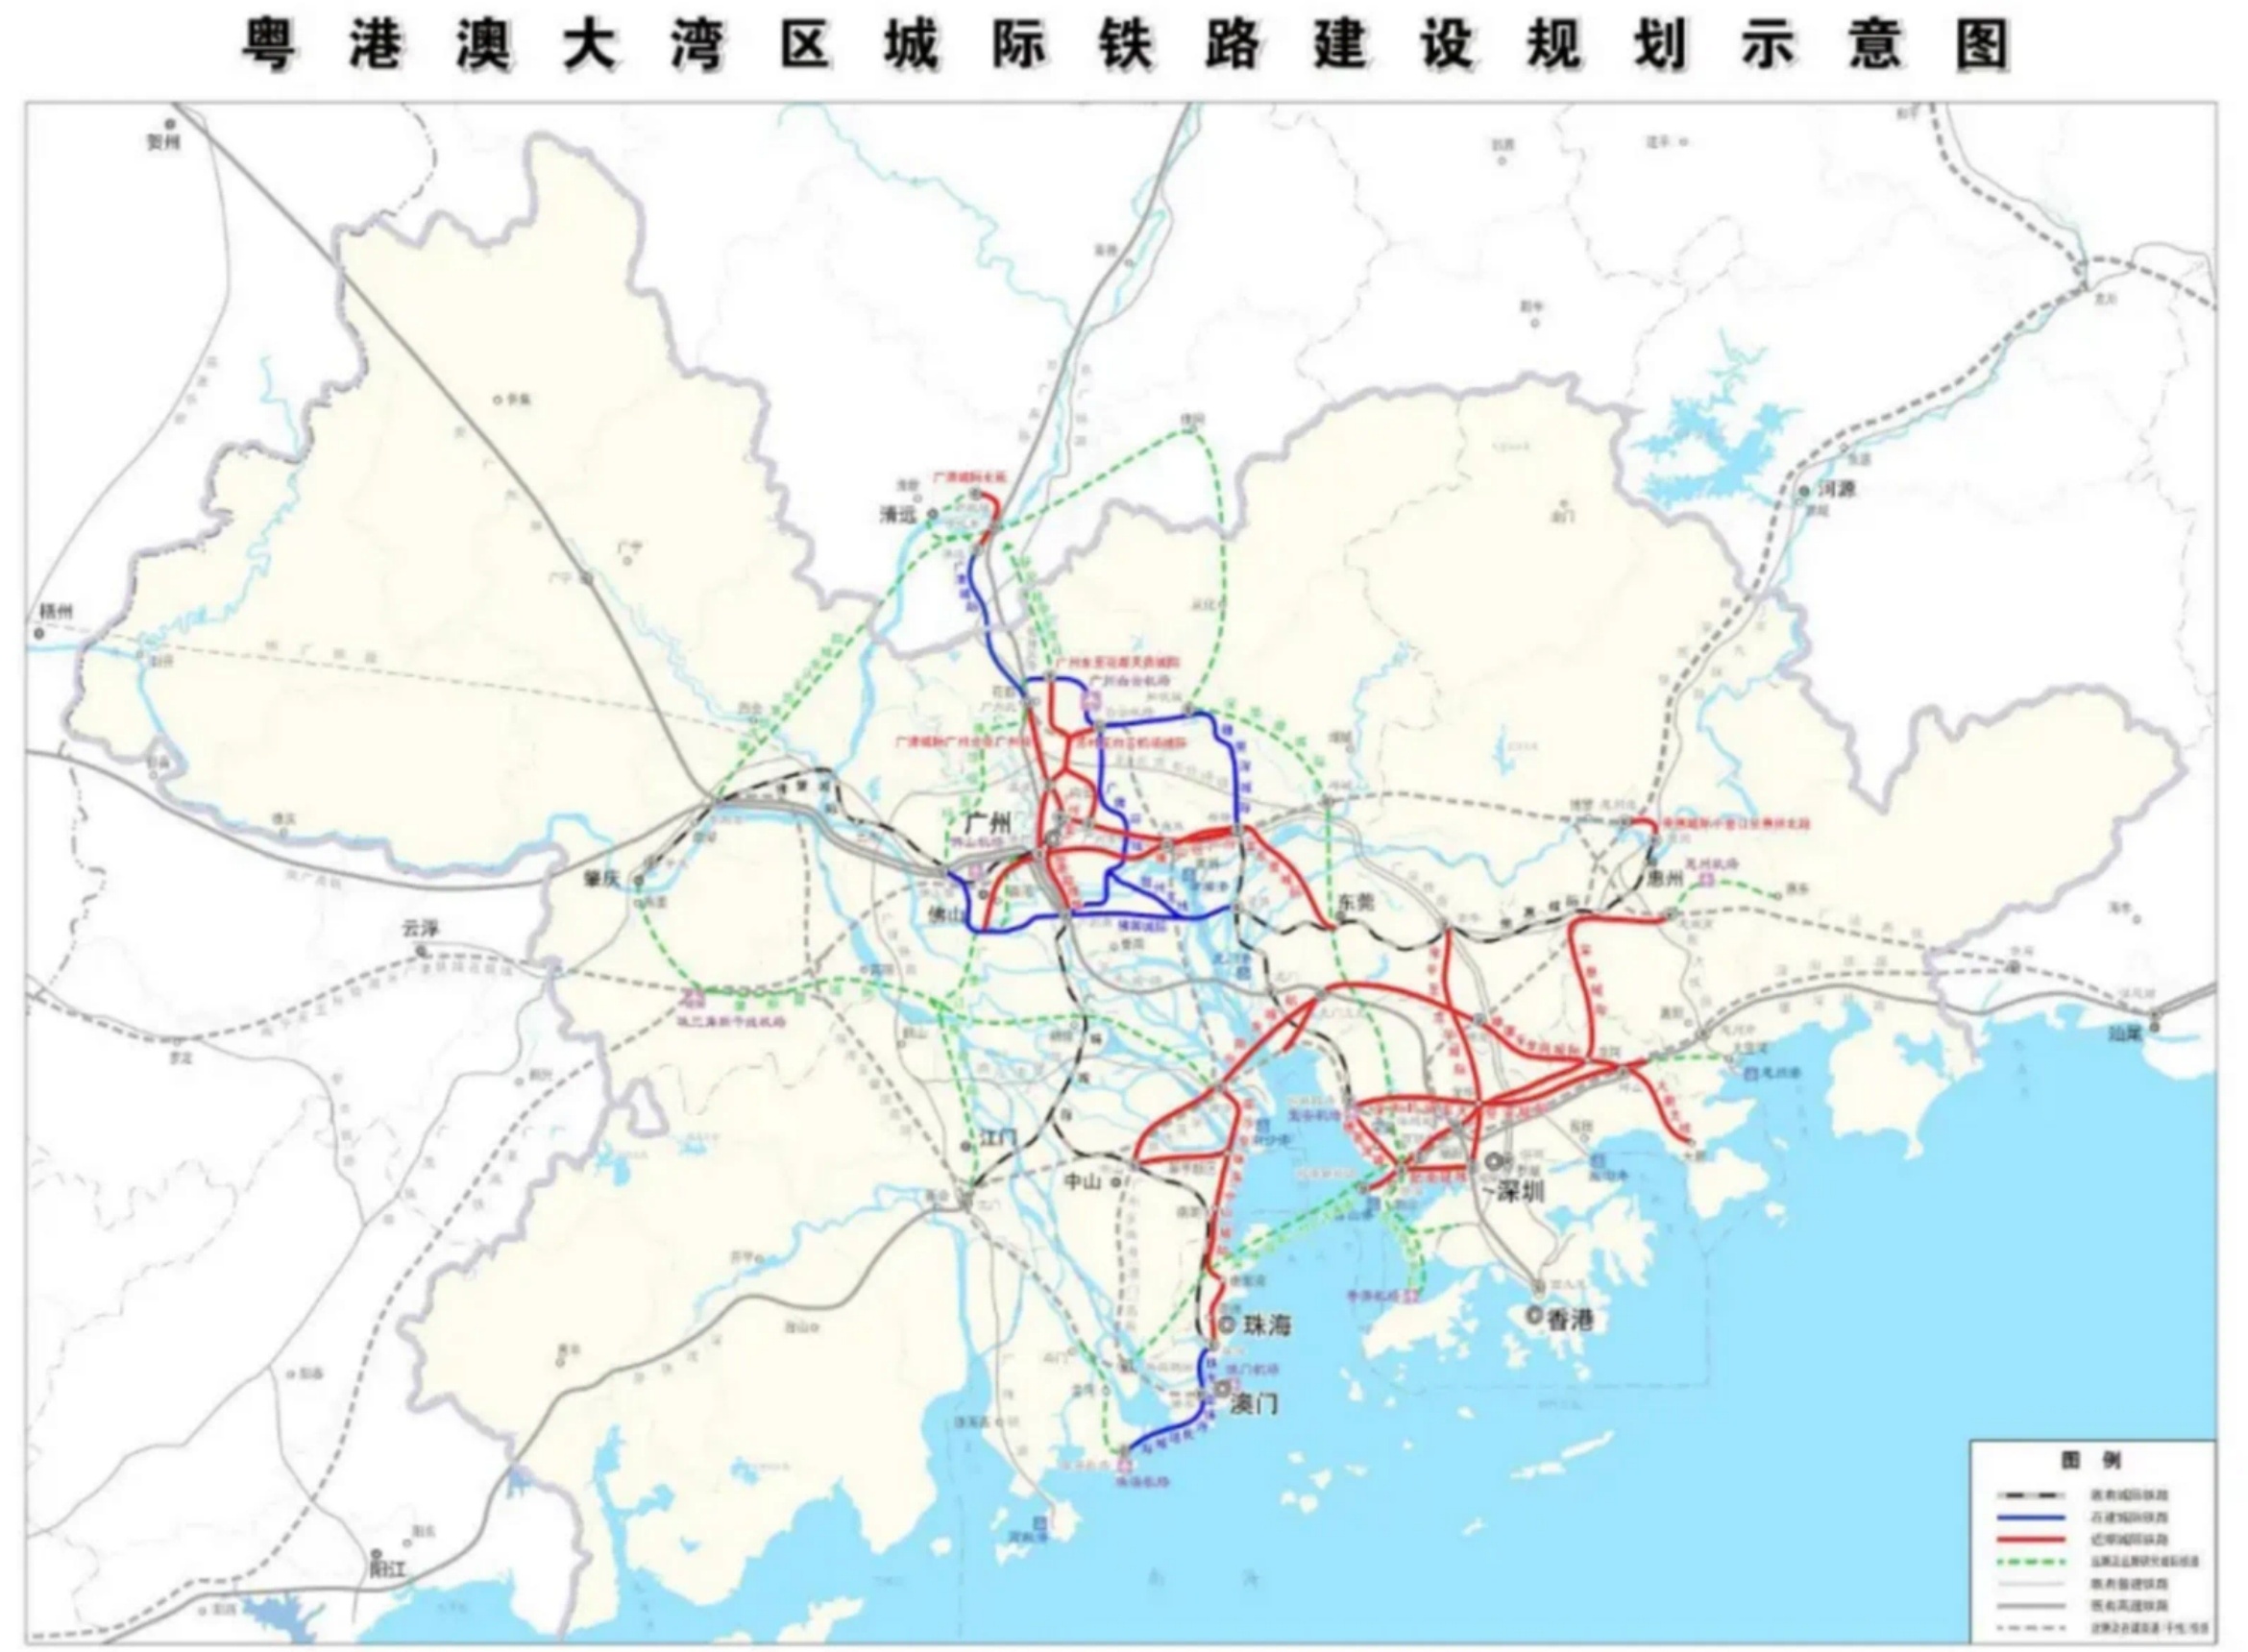 深圳地铁将延伸至东莞四镇,深莞惠轨道交通一体化提速